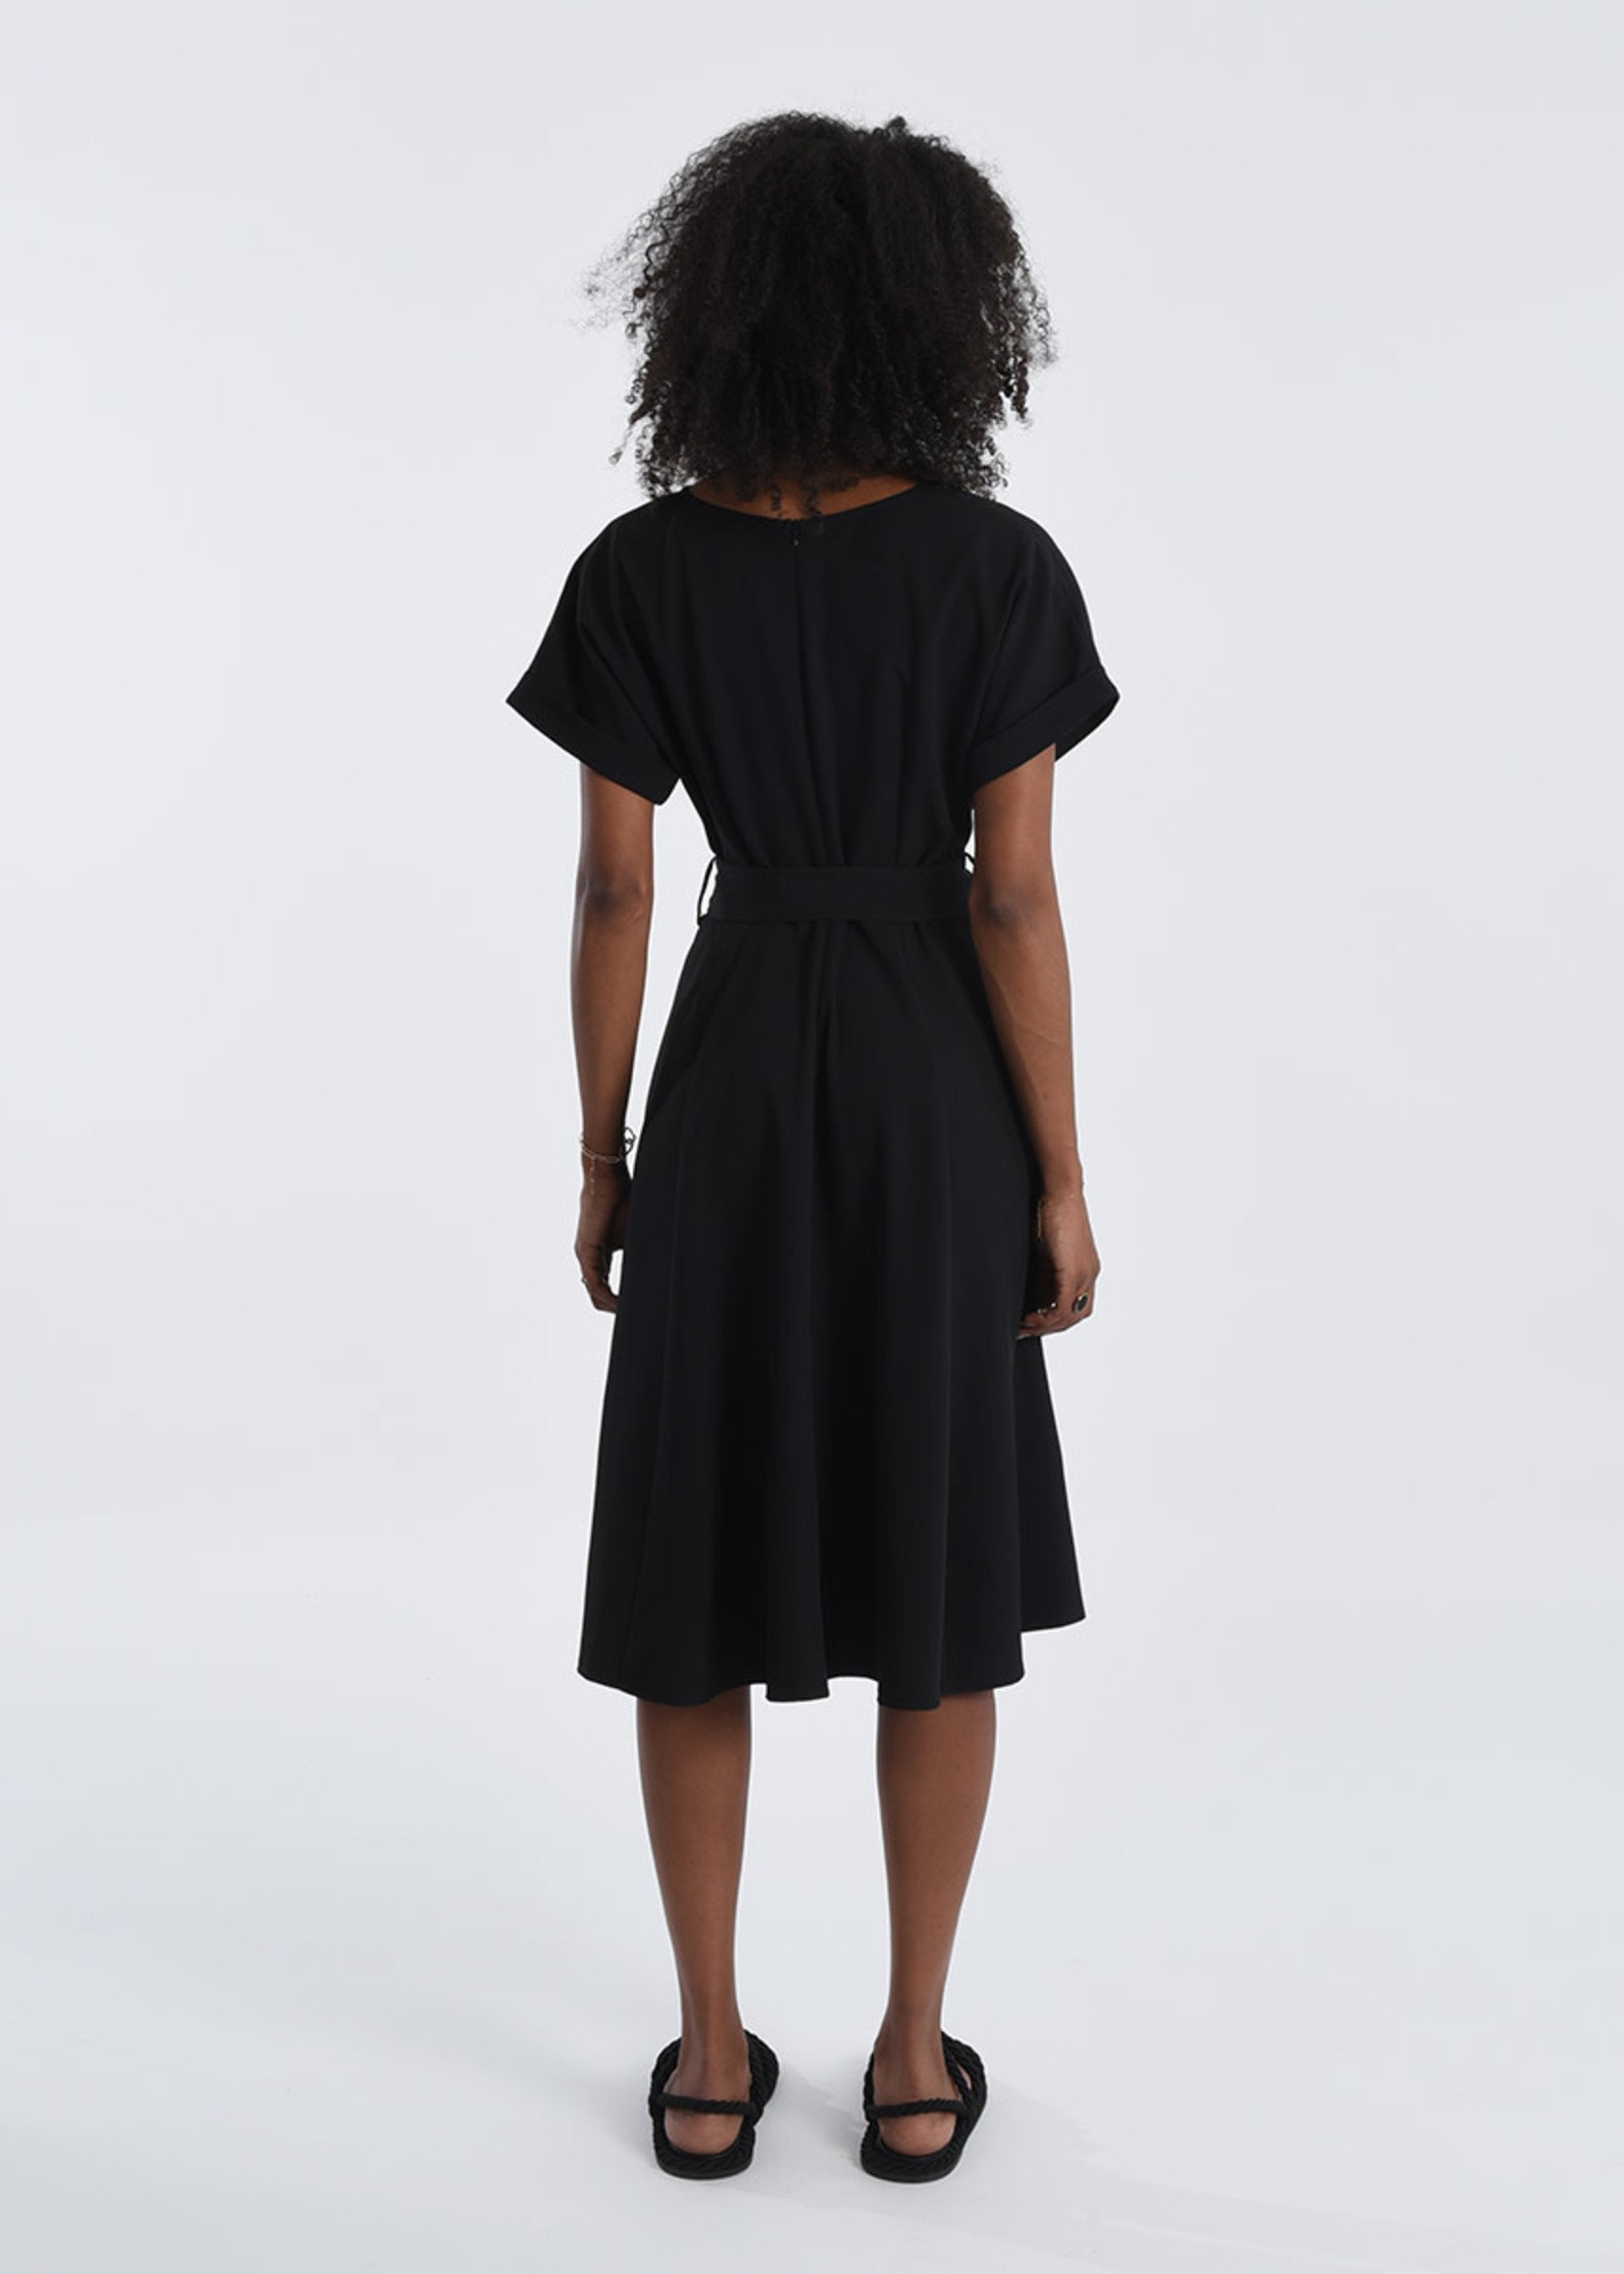 Molly Bracken Black Crossover Midi Dress